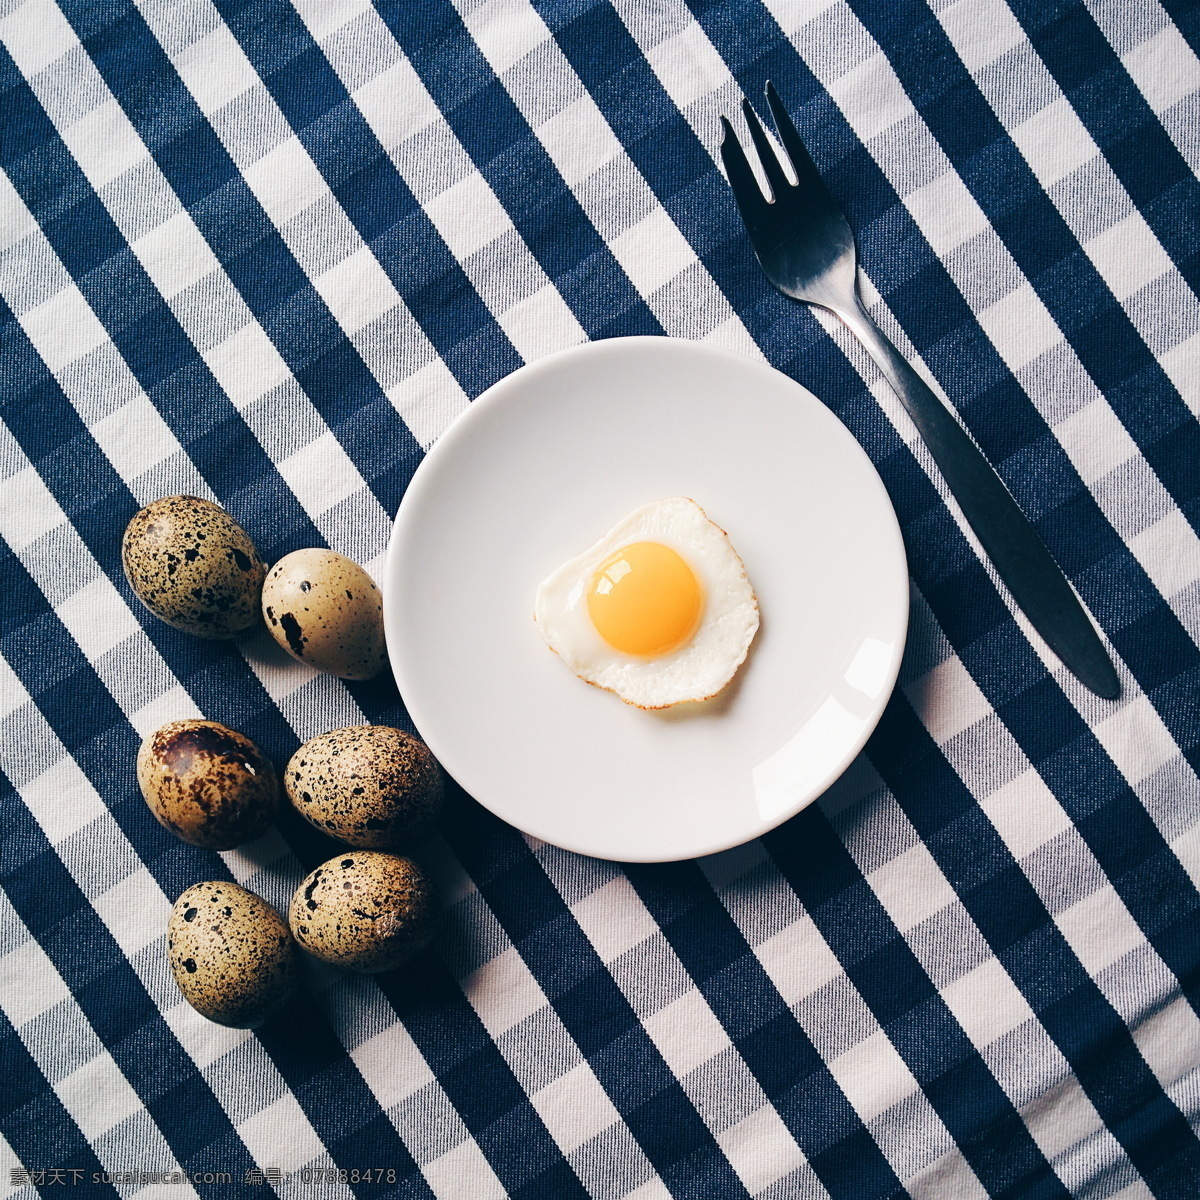 煎蛋 煎鸡蛋 荷包蛋 美食 营养 面包 早餐 西餐美食 餐饮美食